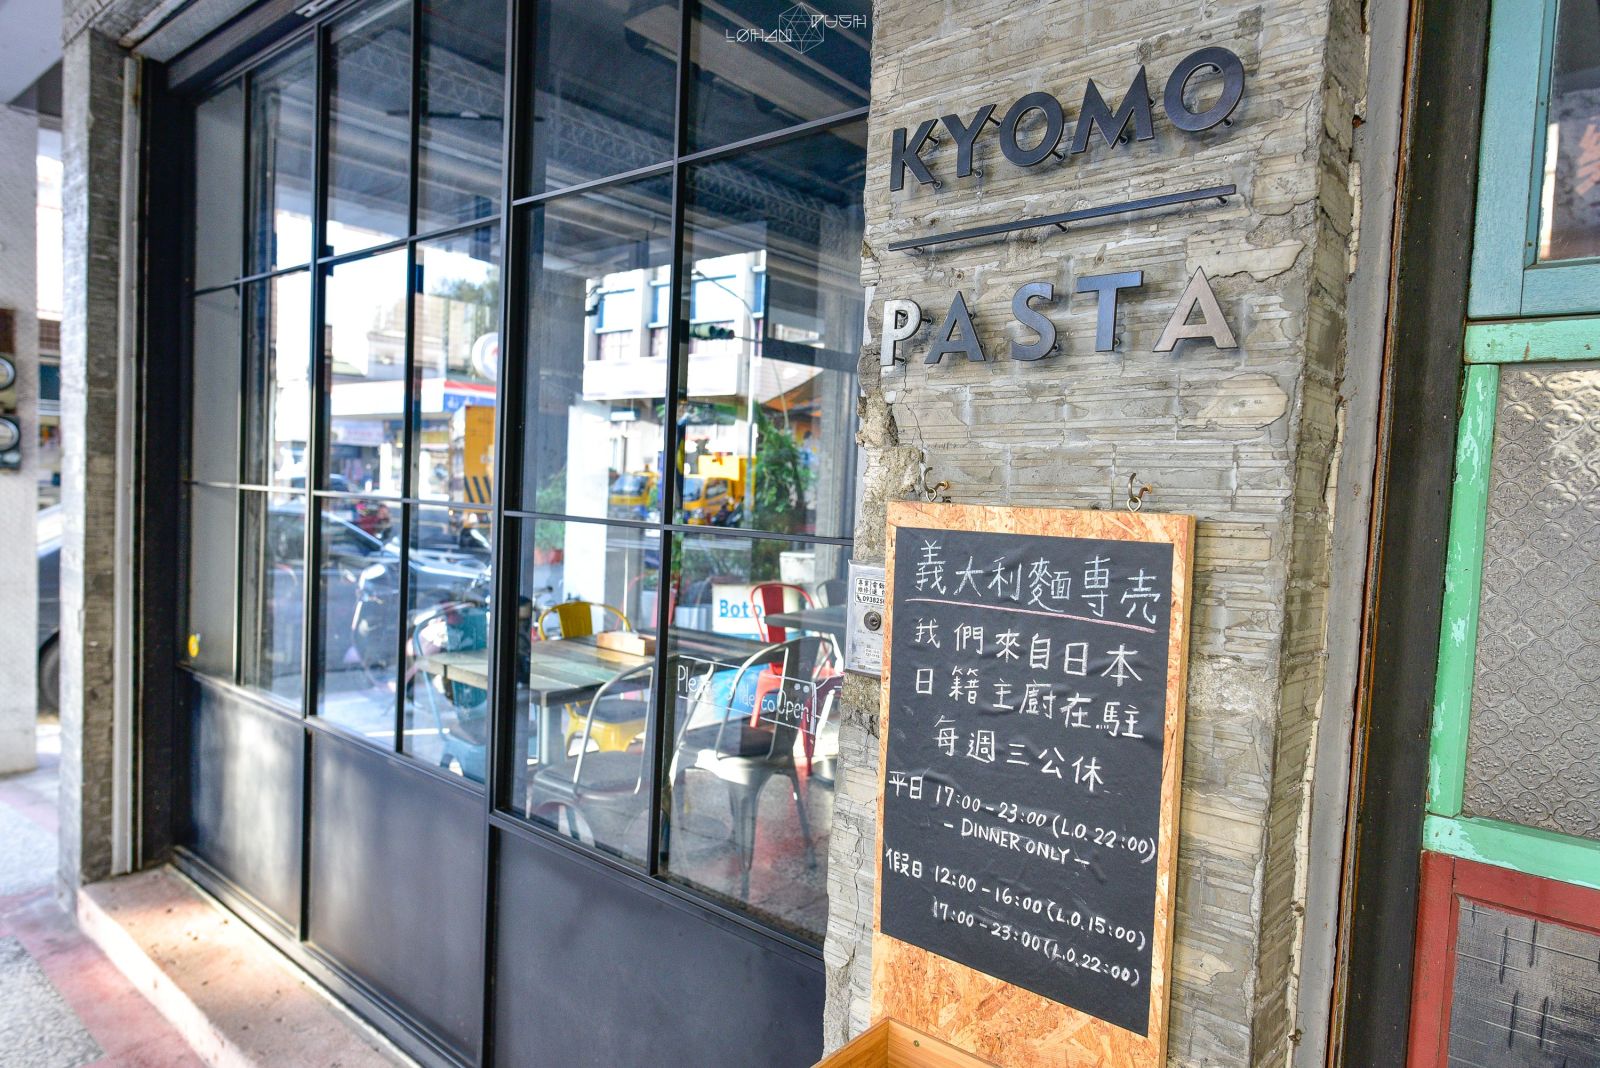 KYOMO PASTA